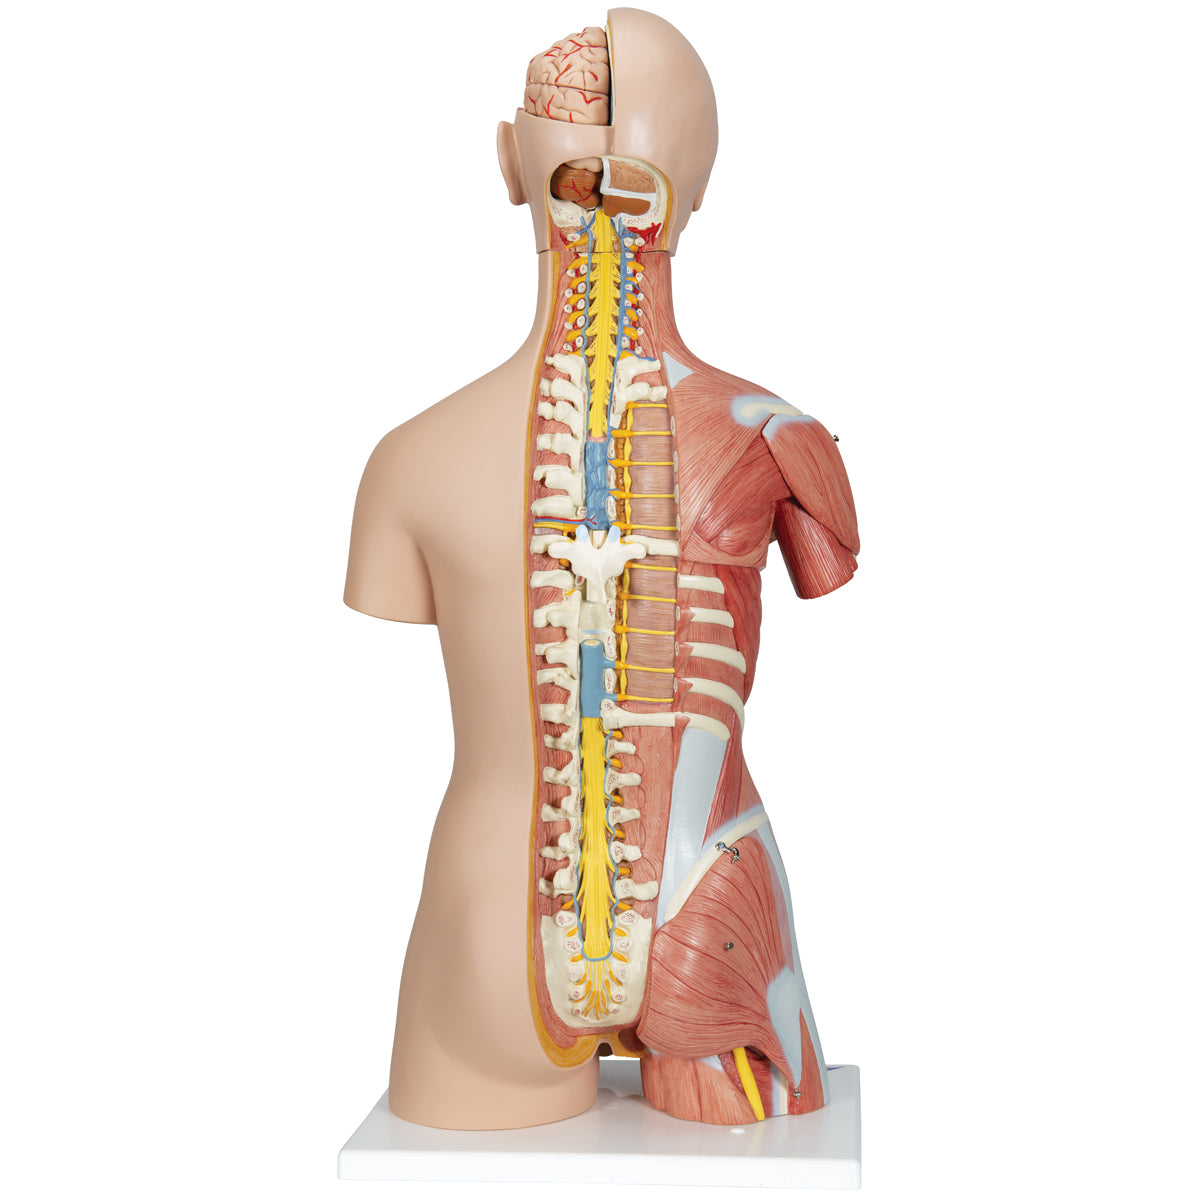 Komplett bål med 30 avtagbara delar, öppen rygg, muskler, ett foster och utbytbara könsorgan